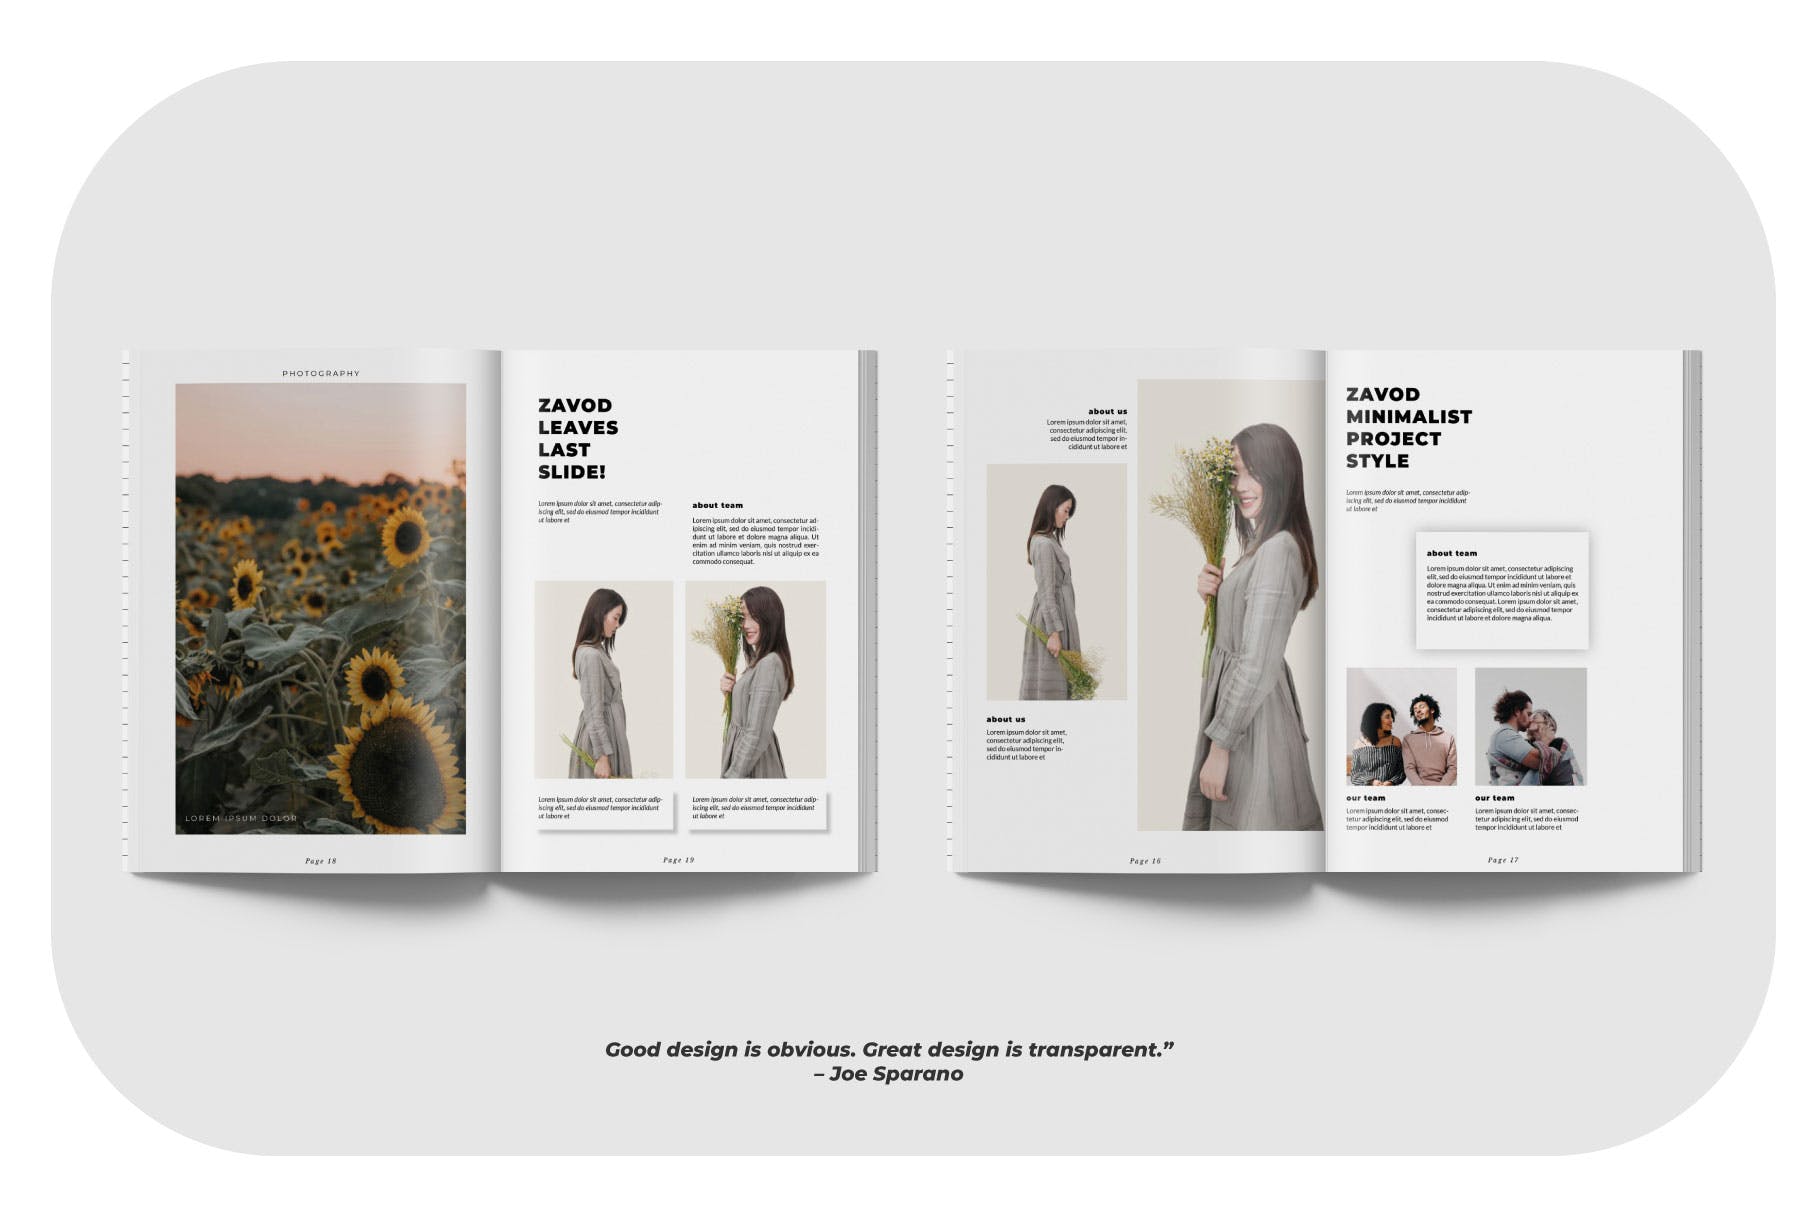 摄影/模特主题第一素材精选杂志排版设计模板 ZAVOD Business Magazine Minimal Template – LS插图(3)